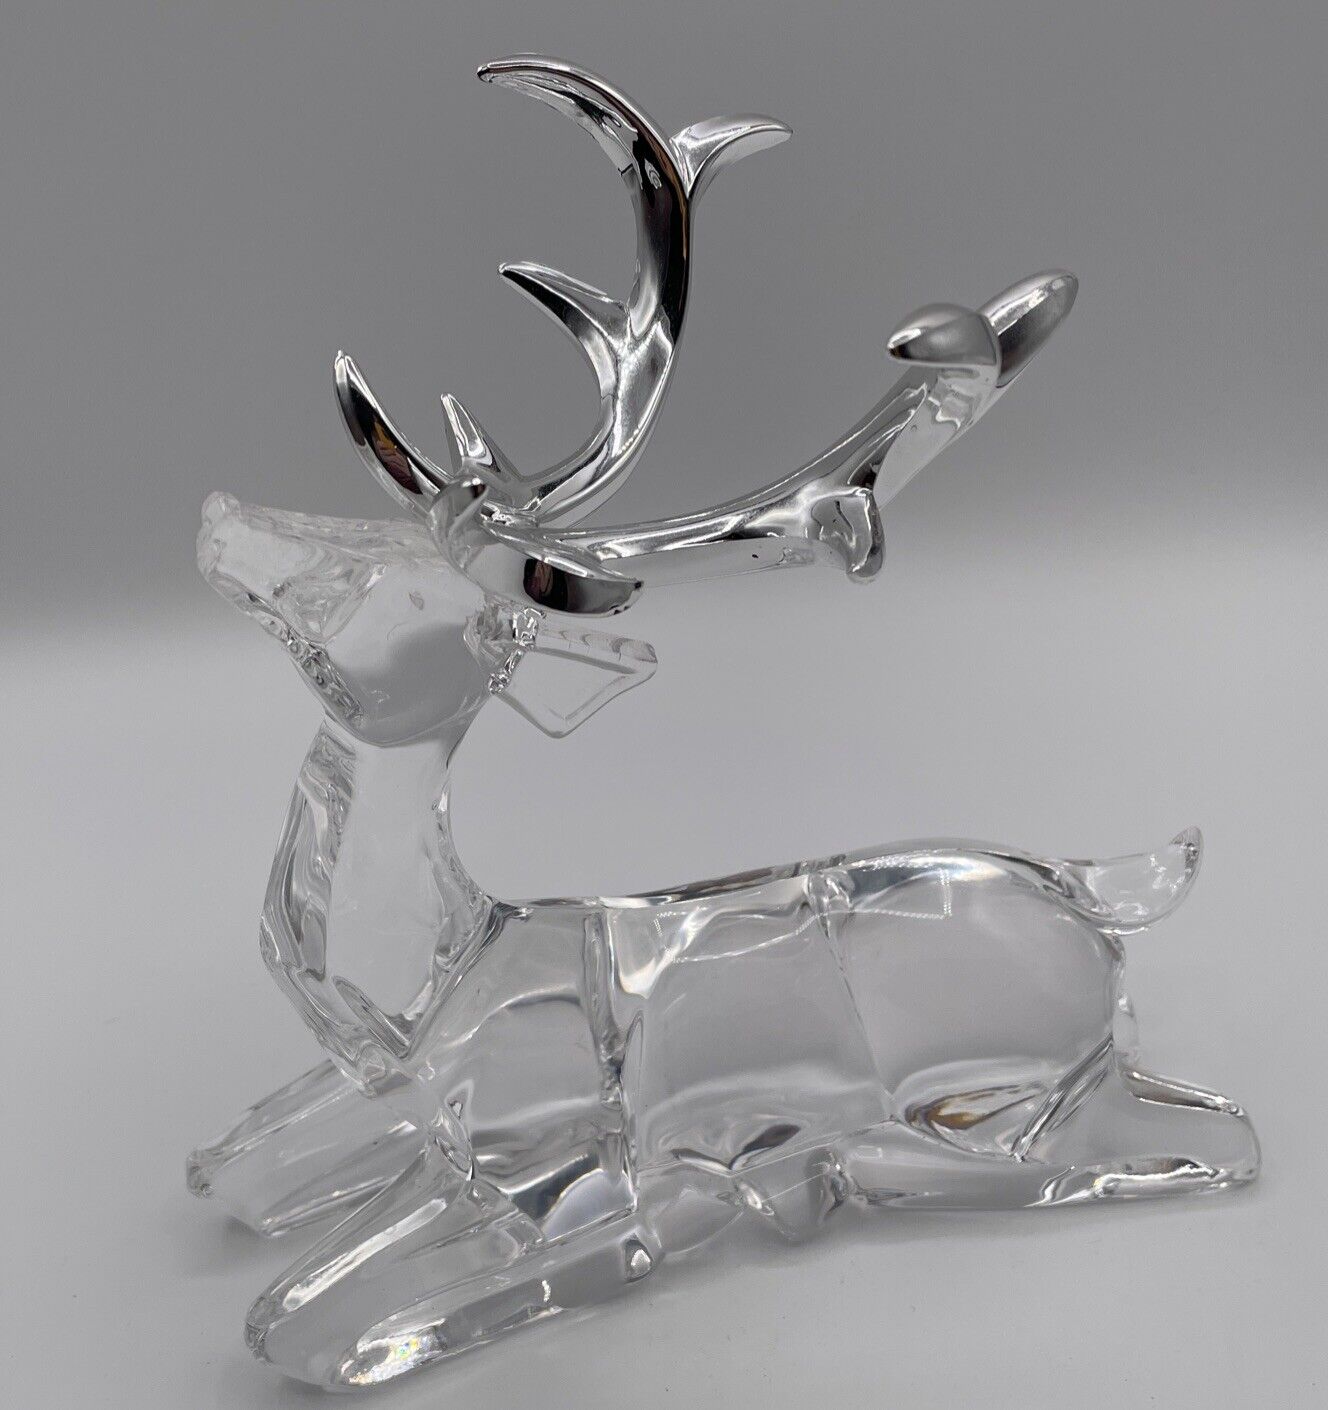 Acrylic Reindeer Figurine Silver Color Antlers 6.5”x 7”~ Very Cute